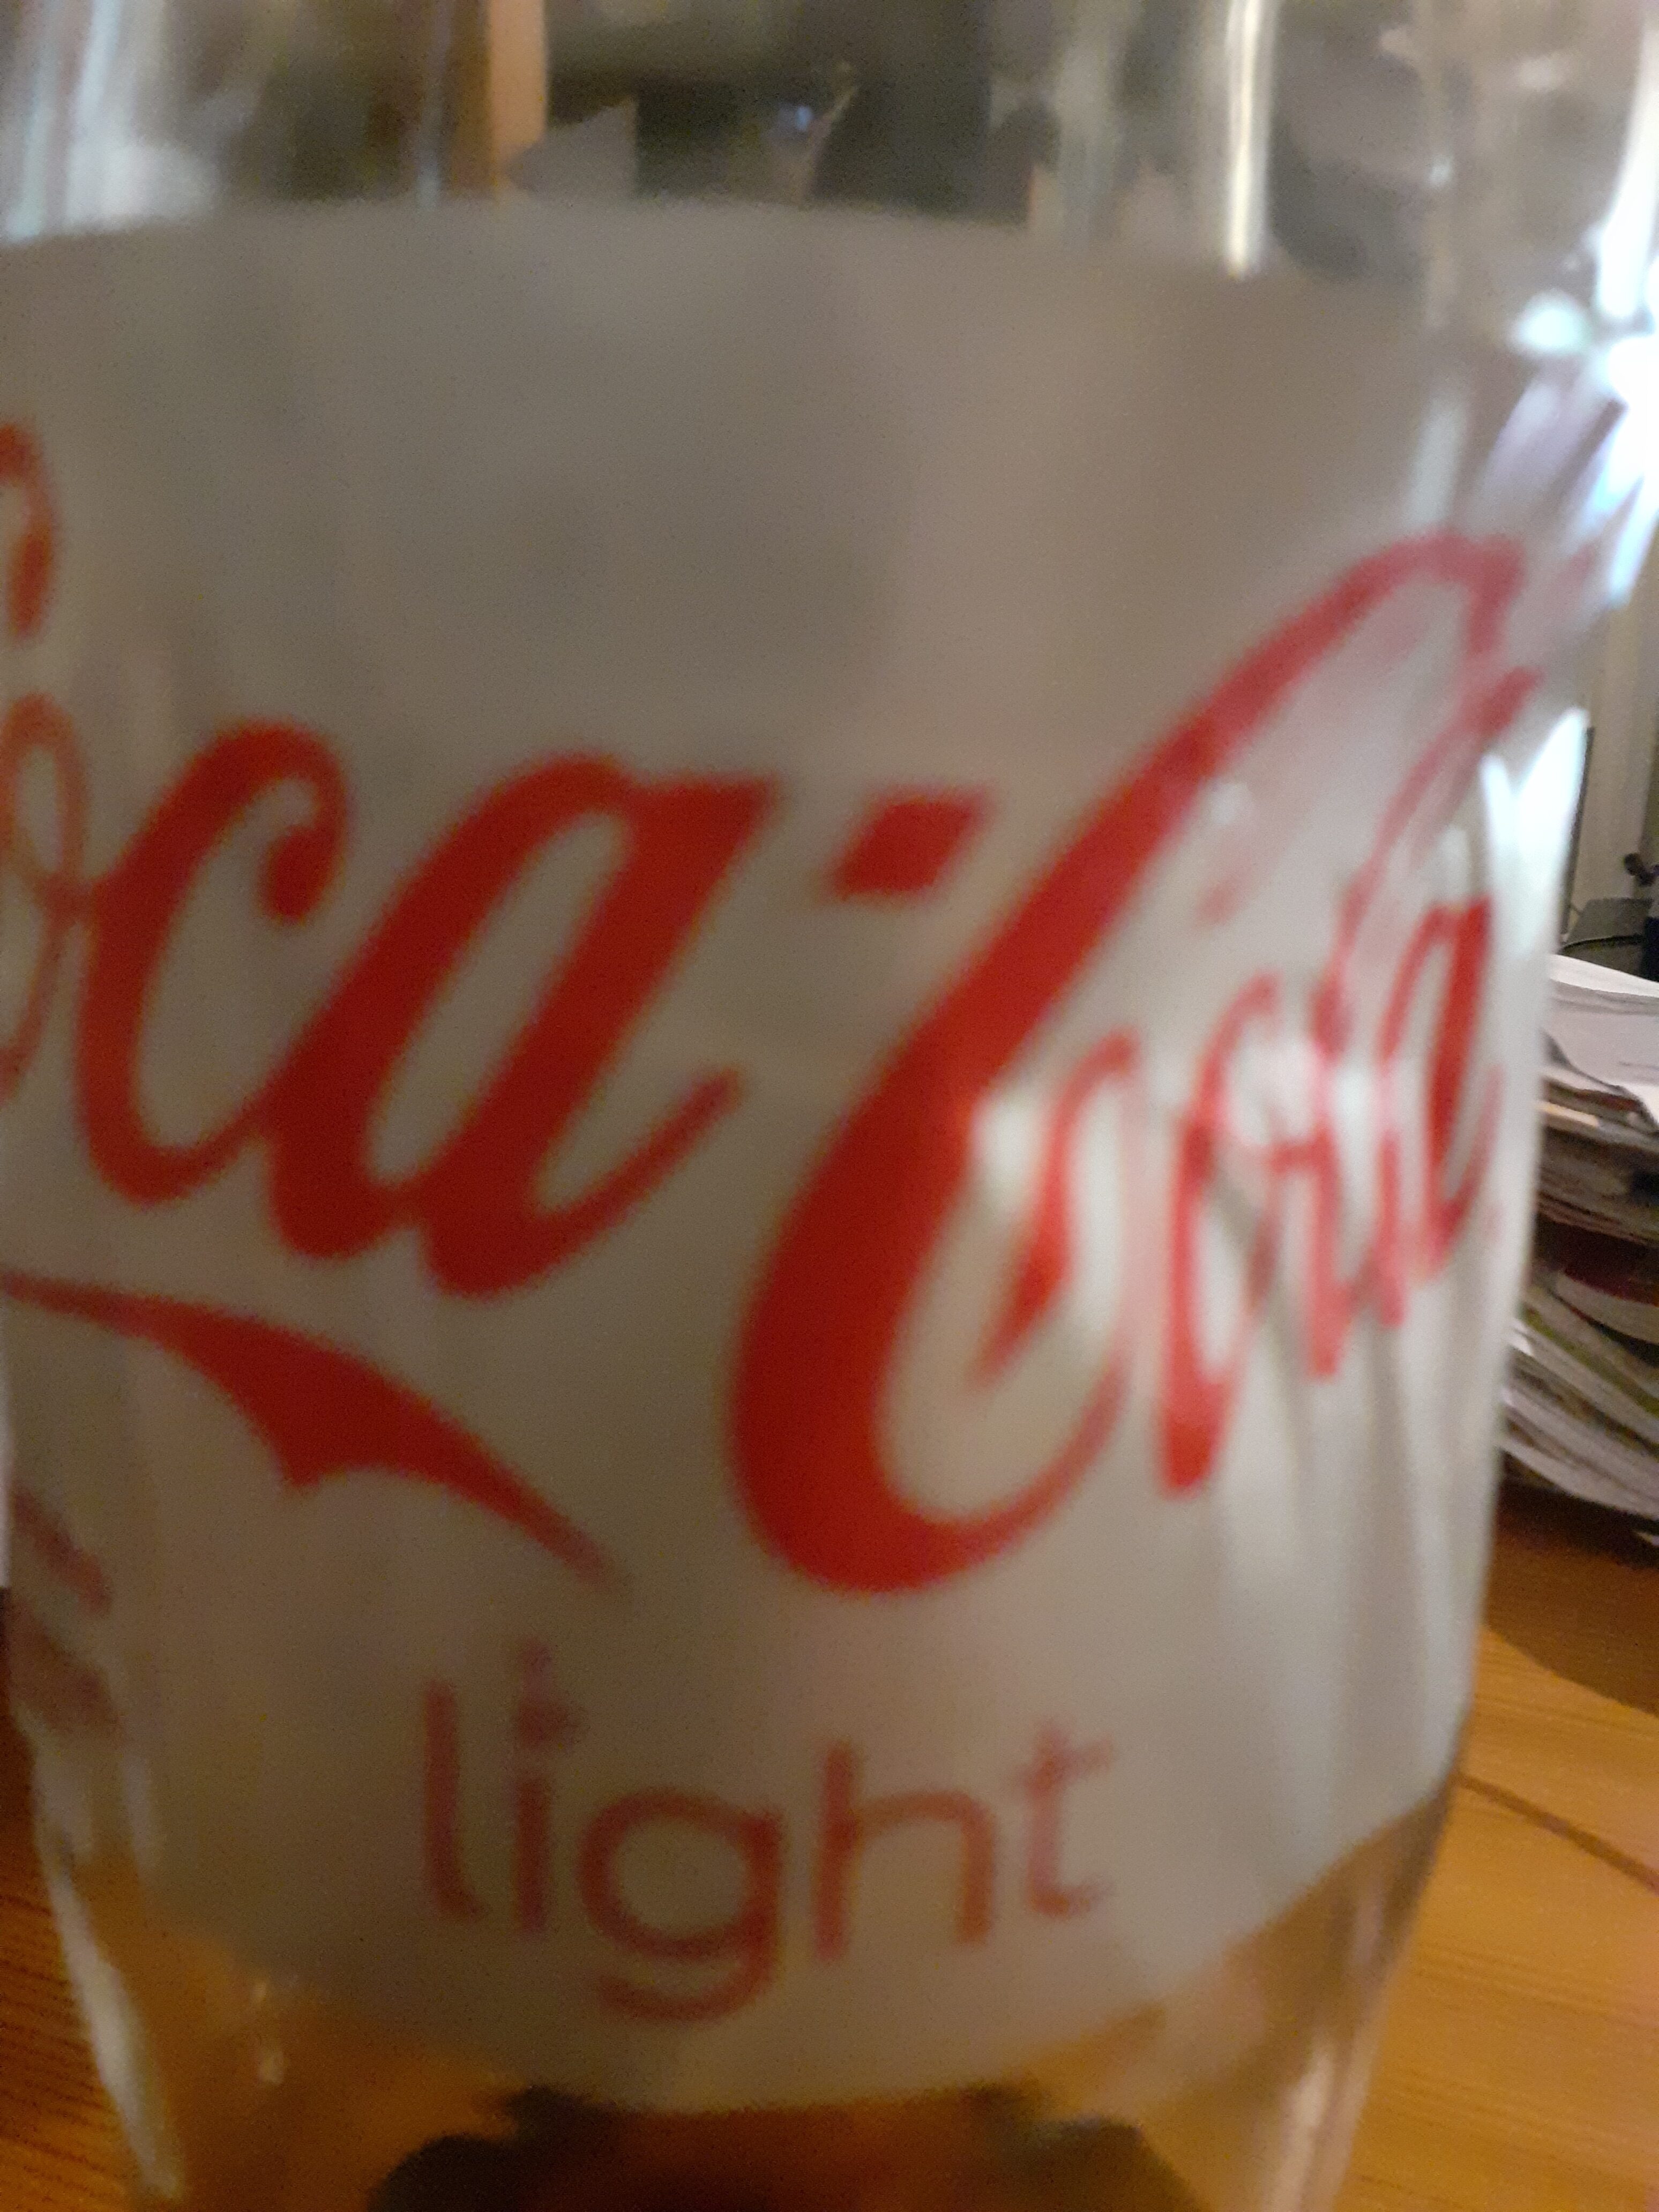 Coca light 1.5l - Instruction de recyclage et/ou informations d'emballage